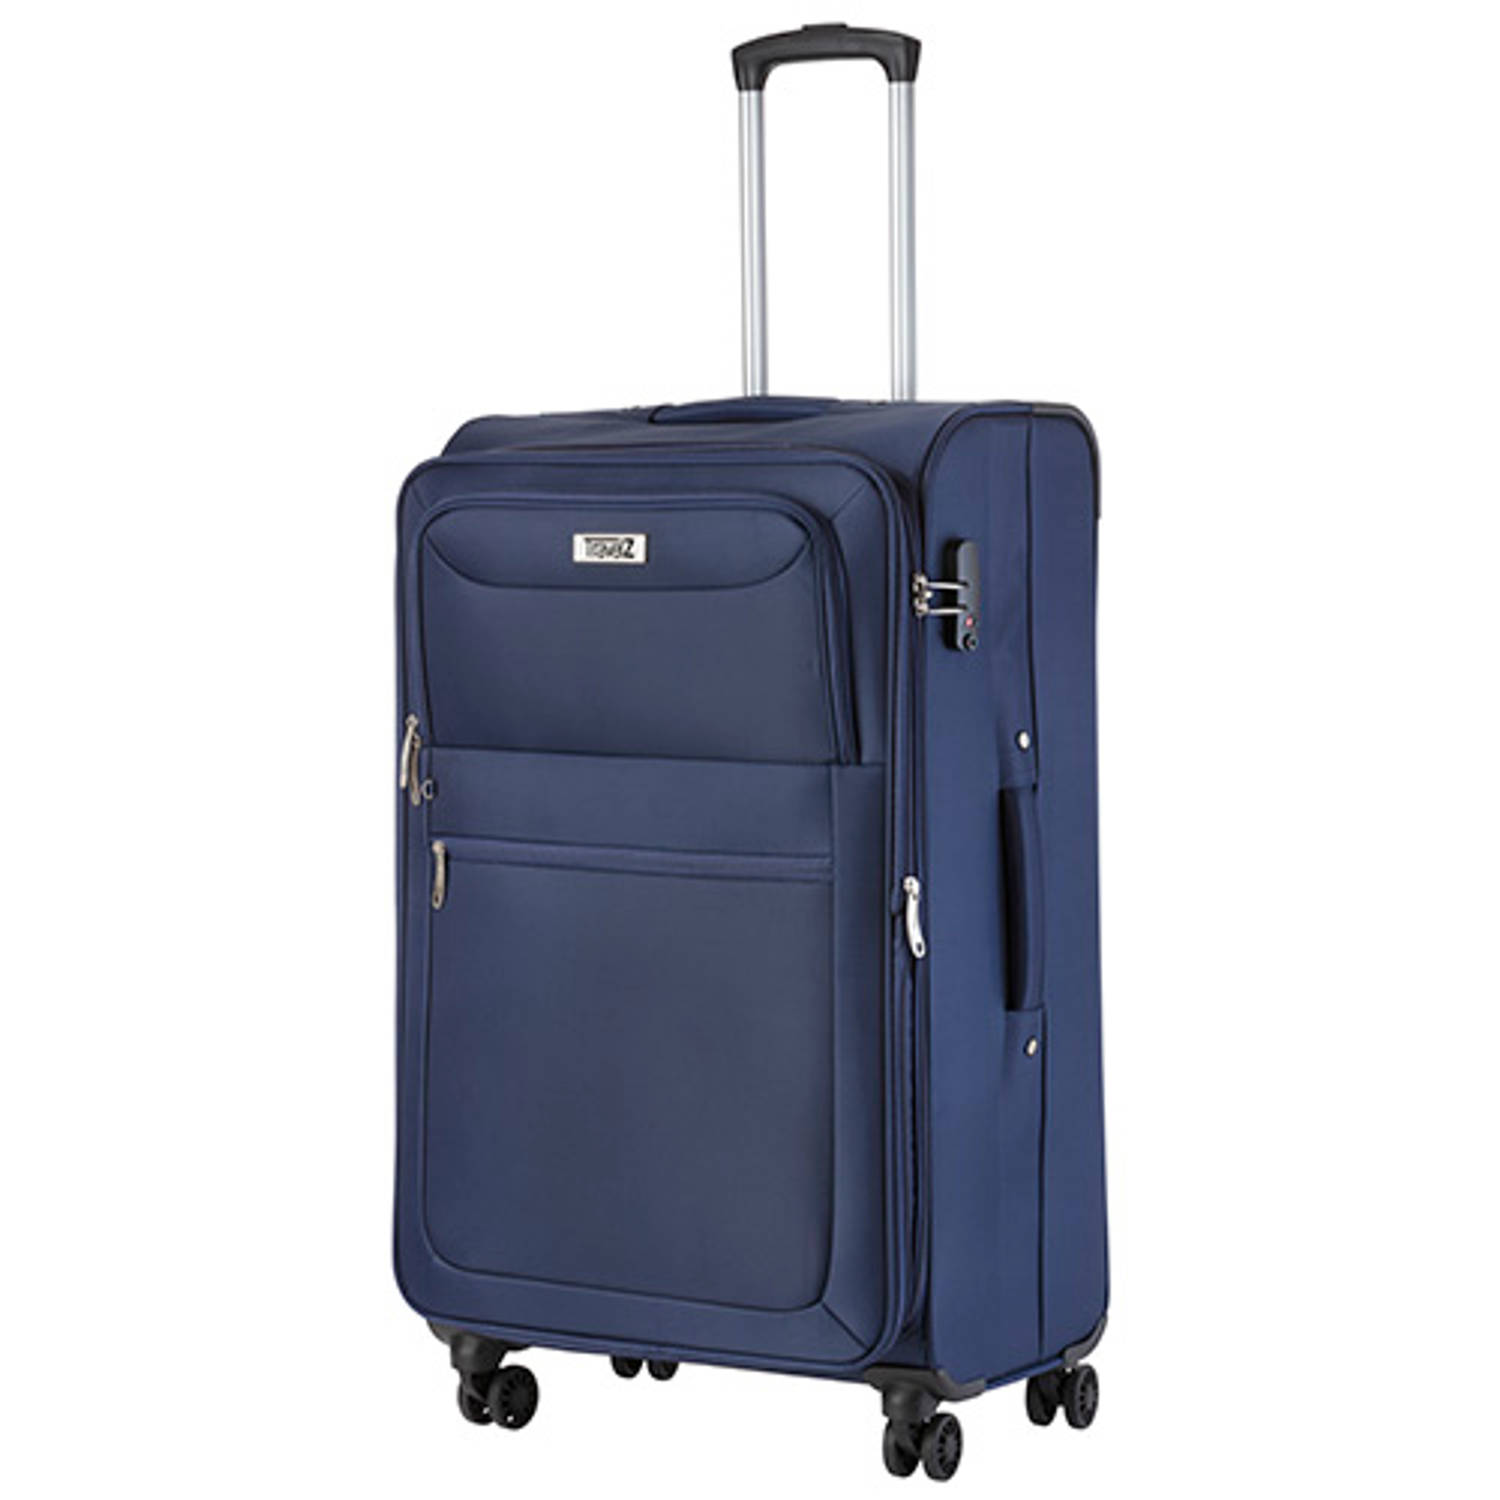 Travelz Softspinner TSA Reiskoffer - Trolley 77cm en 104+16 Ltr met expander - Blauw